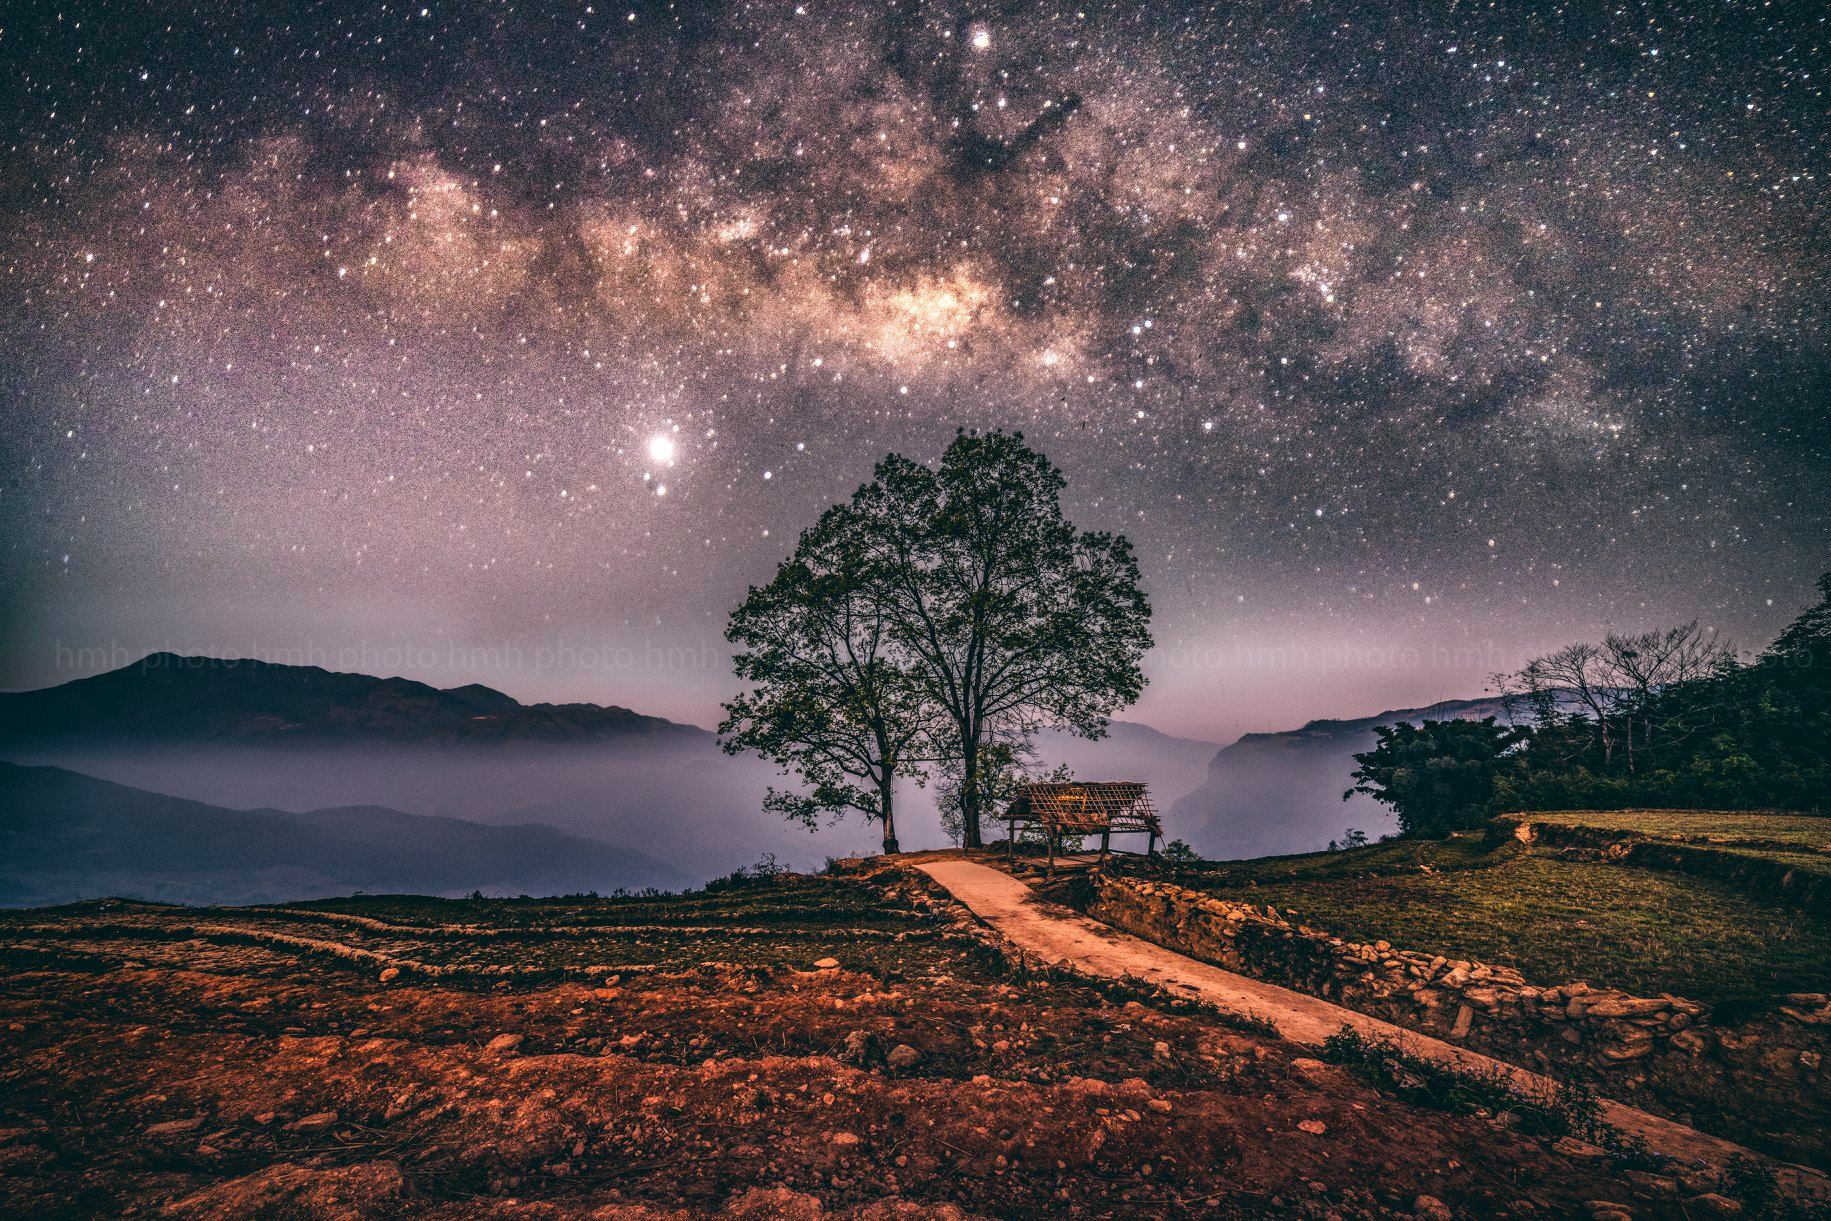 Những ảnh bầu trời đêm sẽ khiến bạn say mê với vẻ đẹp đầy bí ẩn của vũ trụ. Hãy cùng chiêm ngưỡng những vì tinh tú trên bầu trời đen đầy lãng mạn qua từng tấm ảnh.